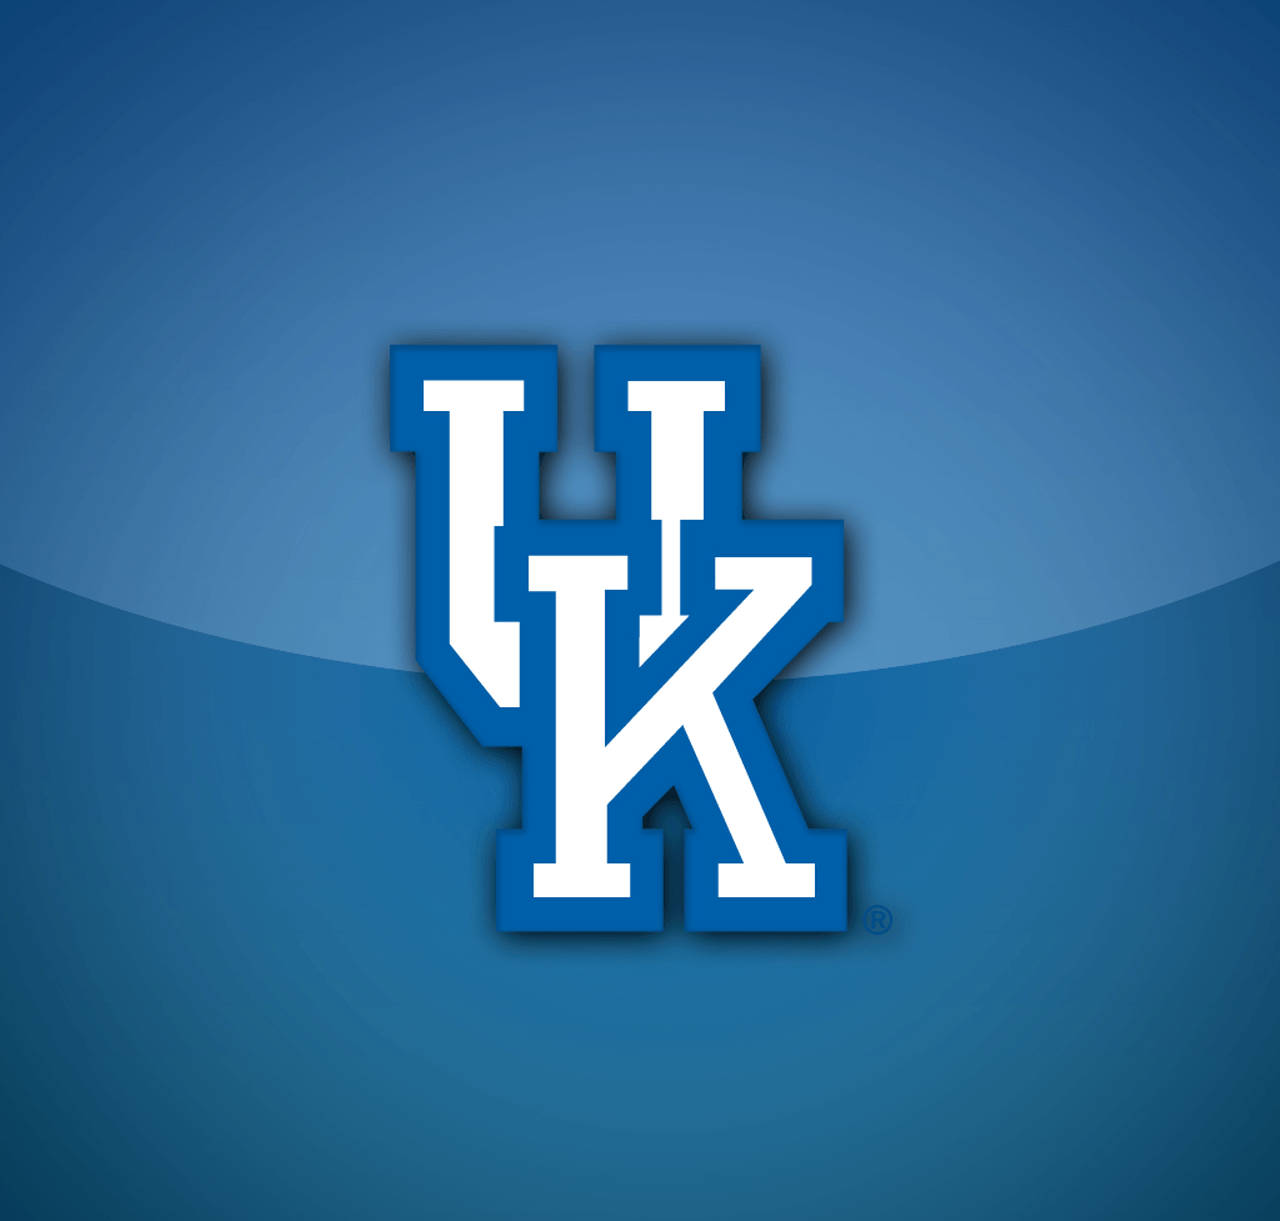 University Of Kentucky UK Logo 3D Wallpaper skaber en visuel fornøjelse Wallpaper